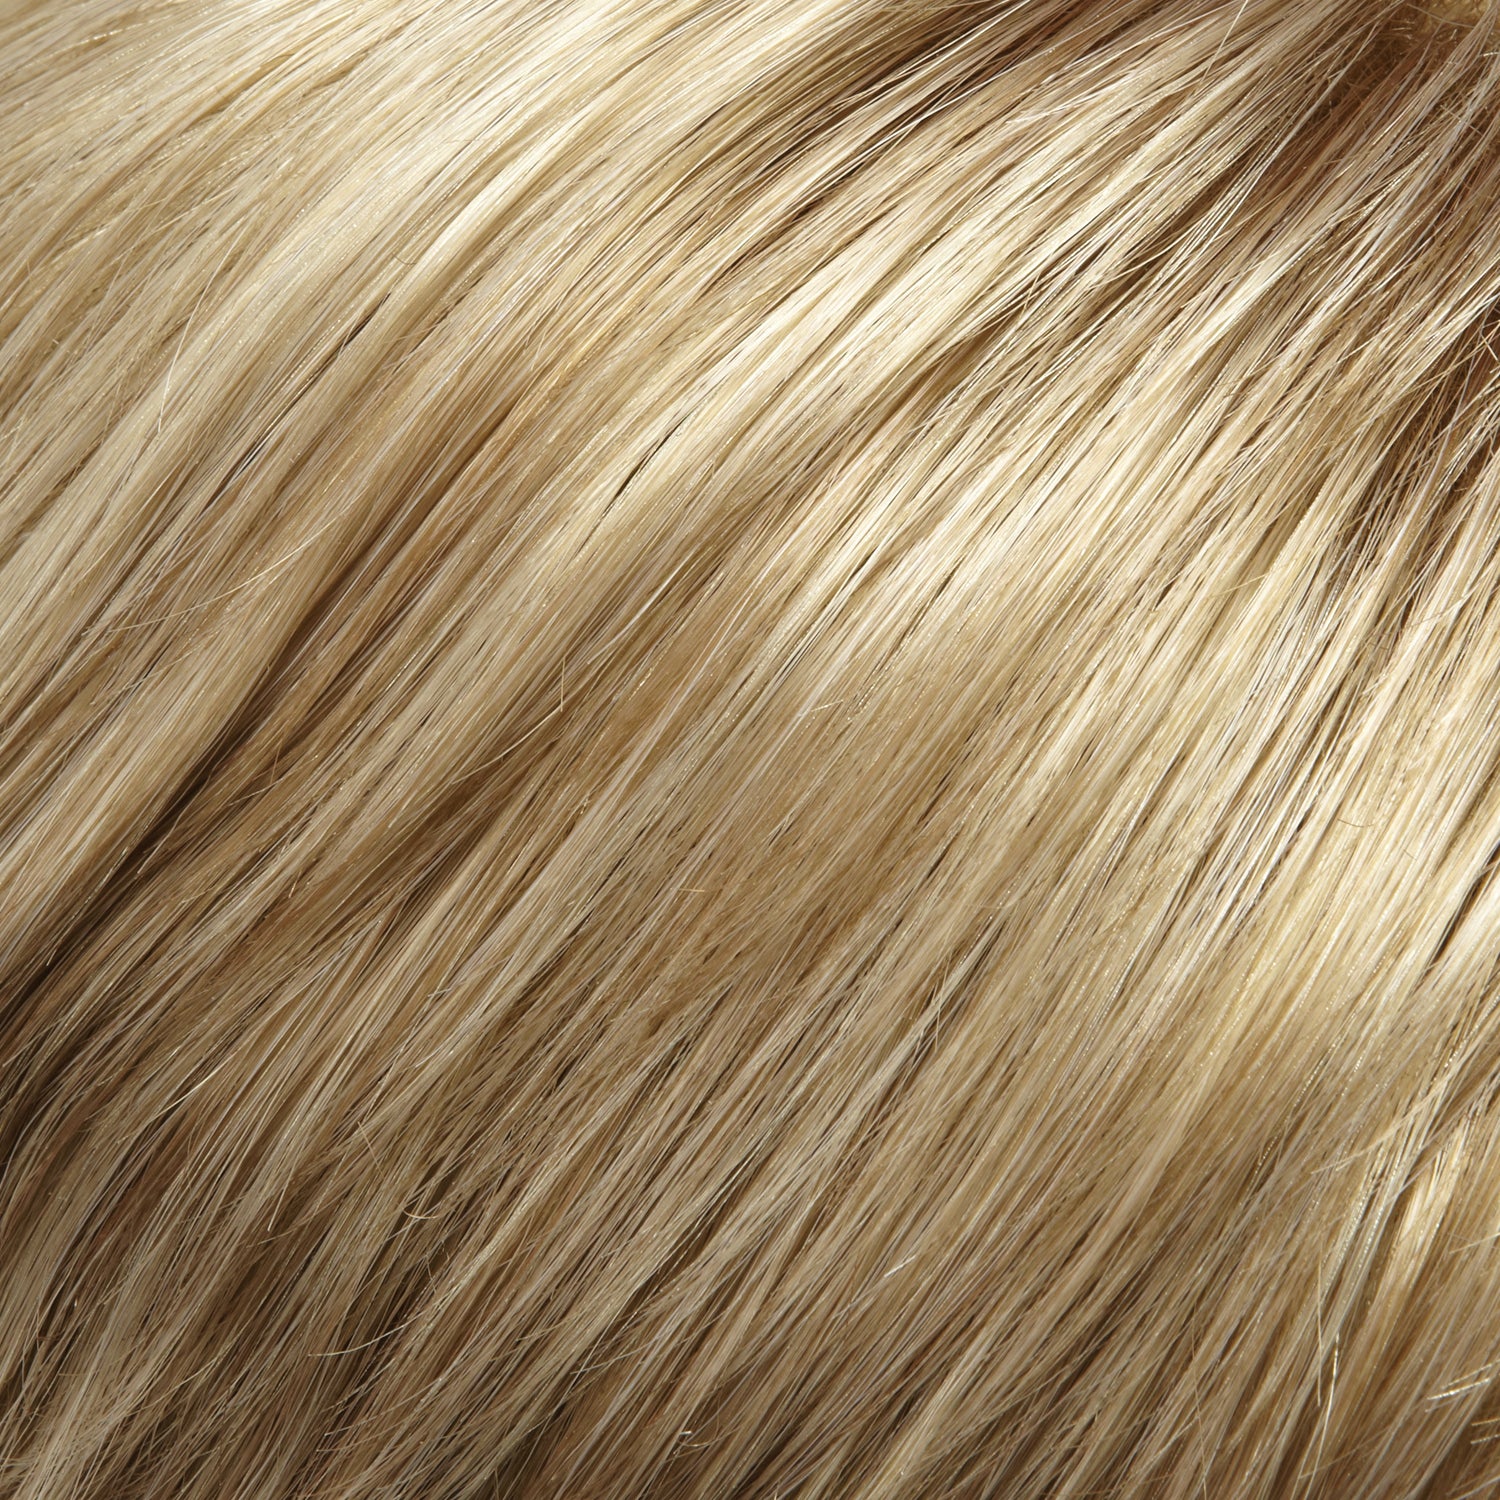 14/24 medium natural ash blonde & lt natural blonde blend